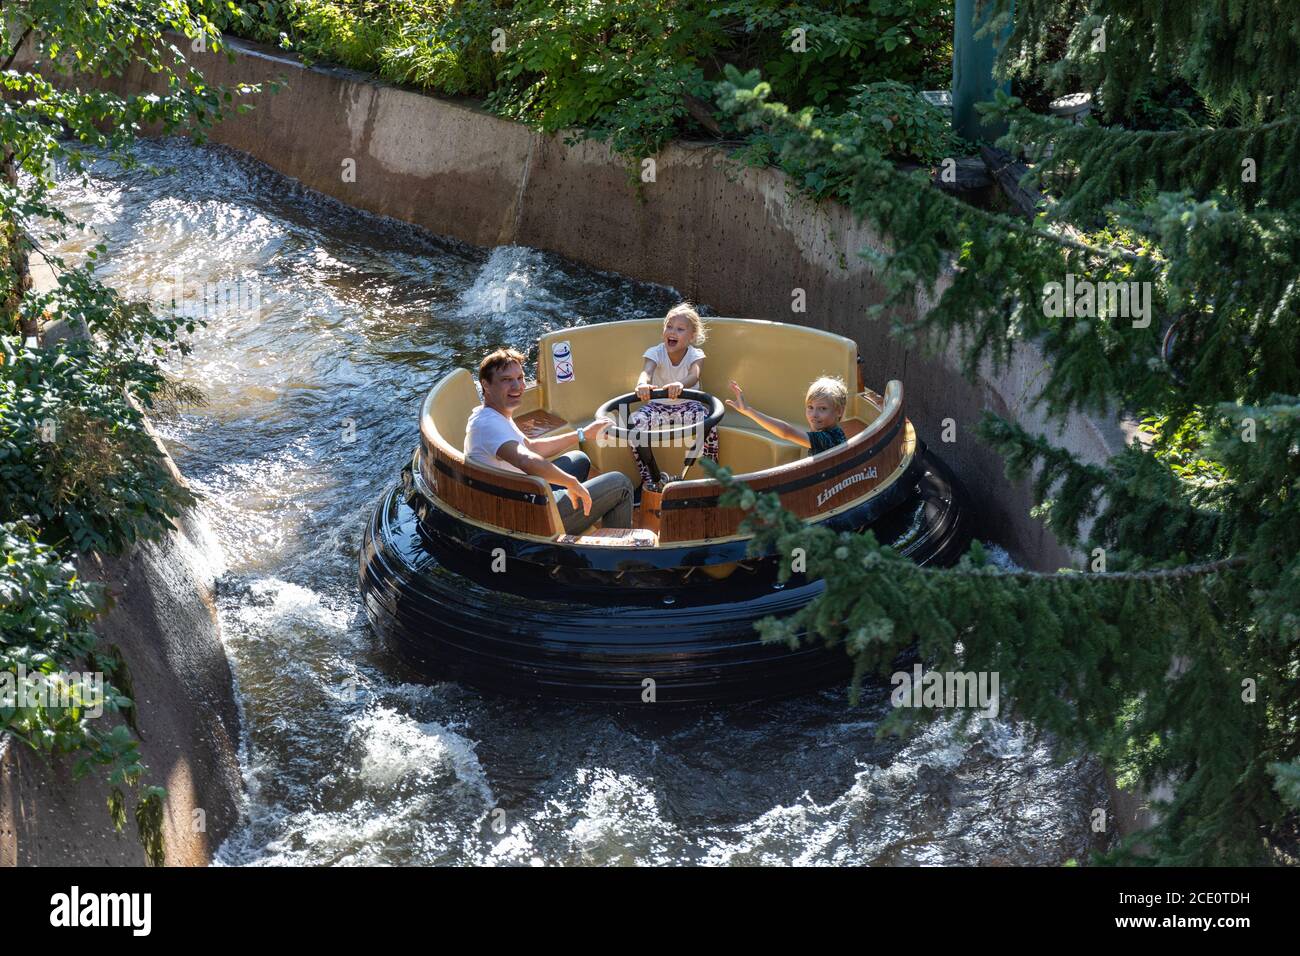 Un homme et deux enfants aux rapides de la rivière Hurjakuru se trouvent dans le parc d'attractions de Linnanmäki à Helsinki, en Finlande Banque D'Images